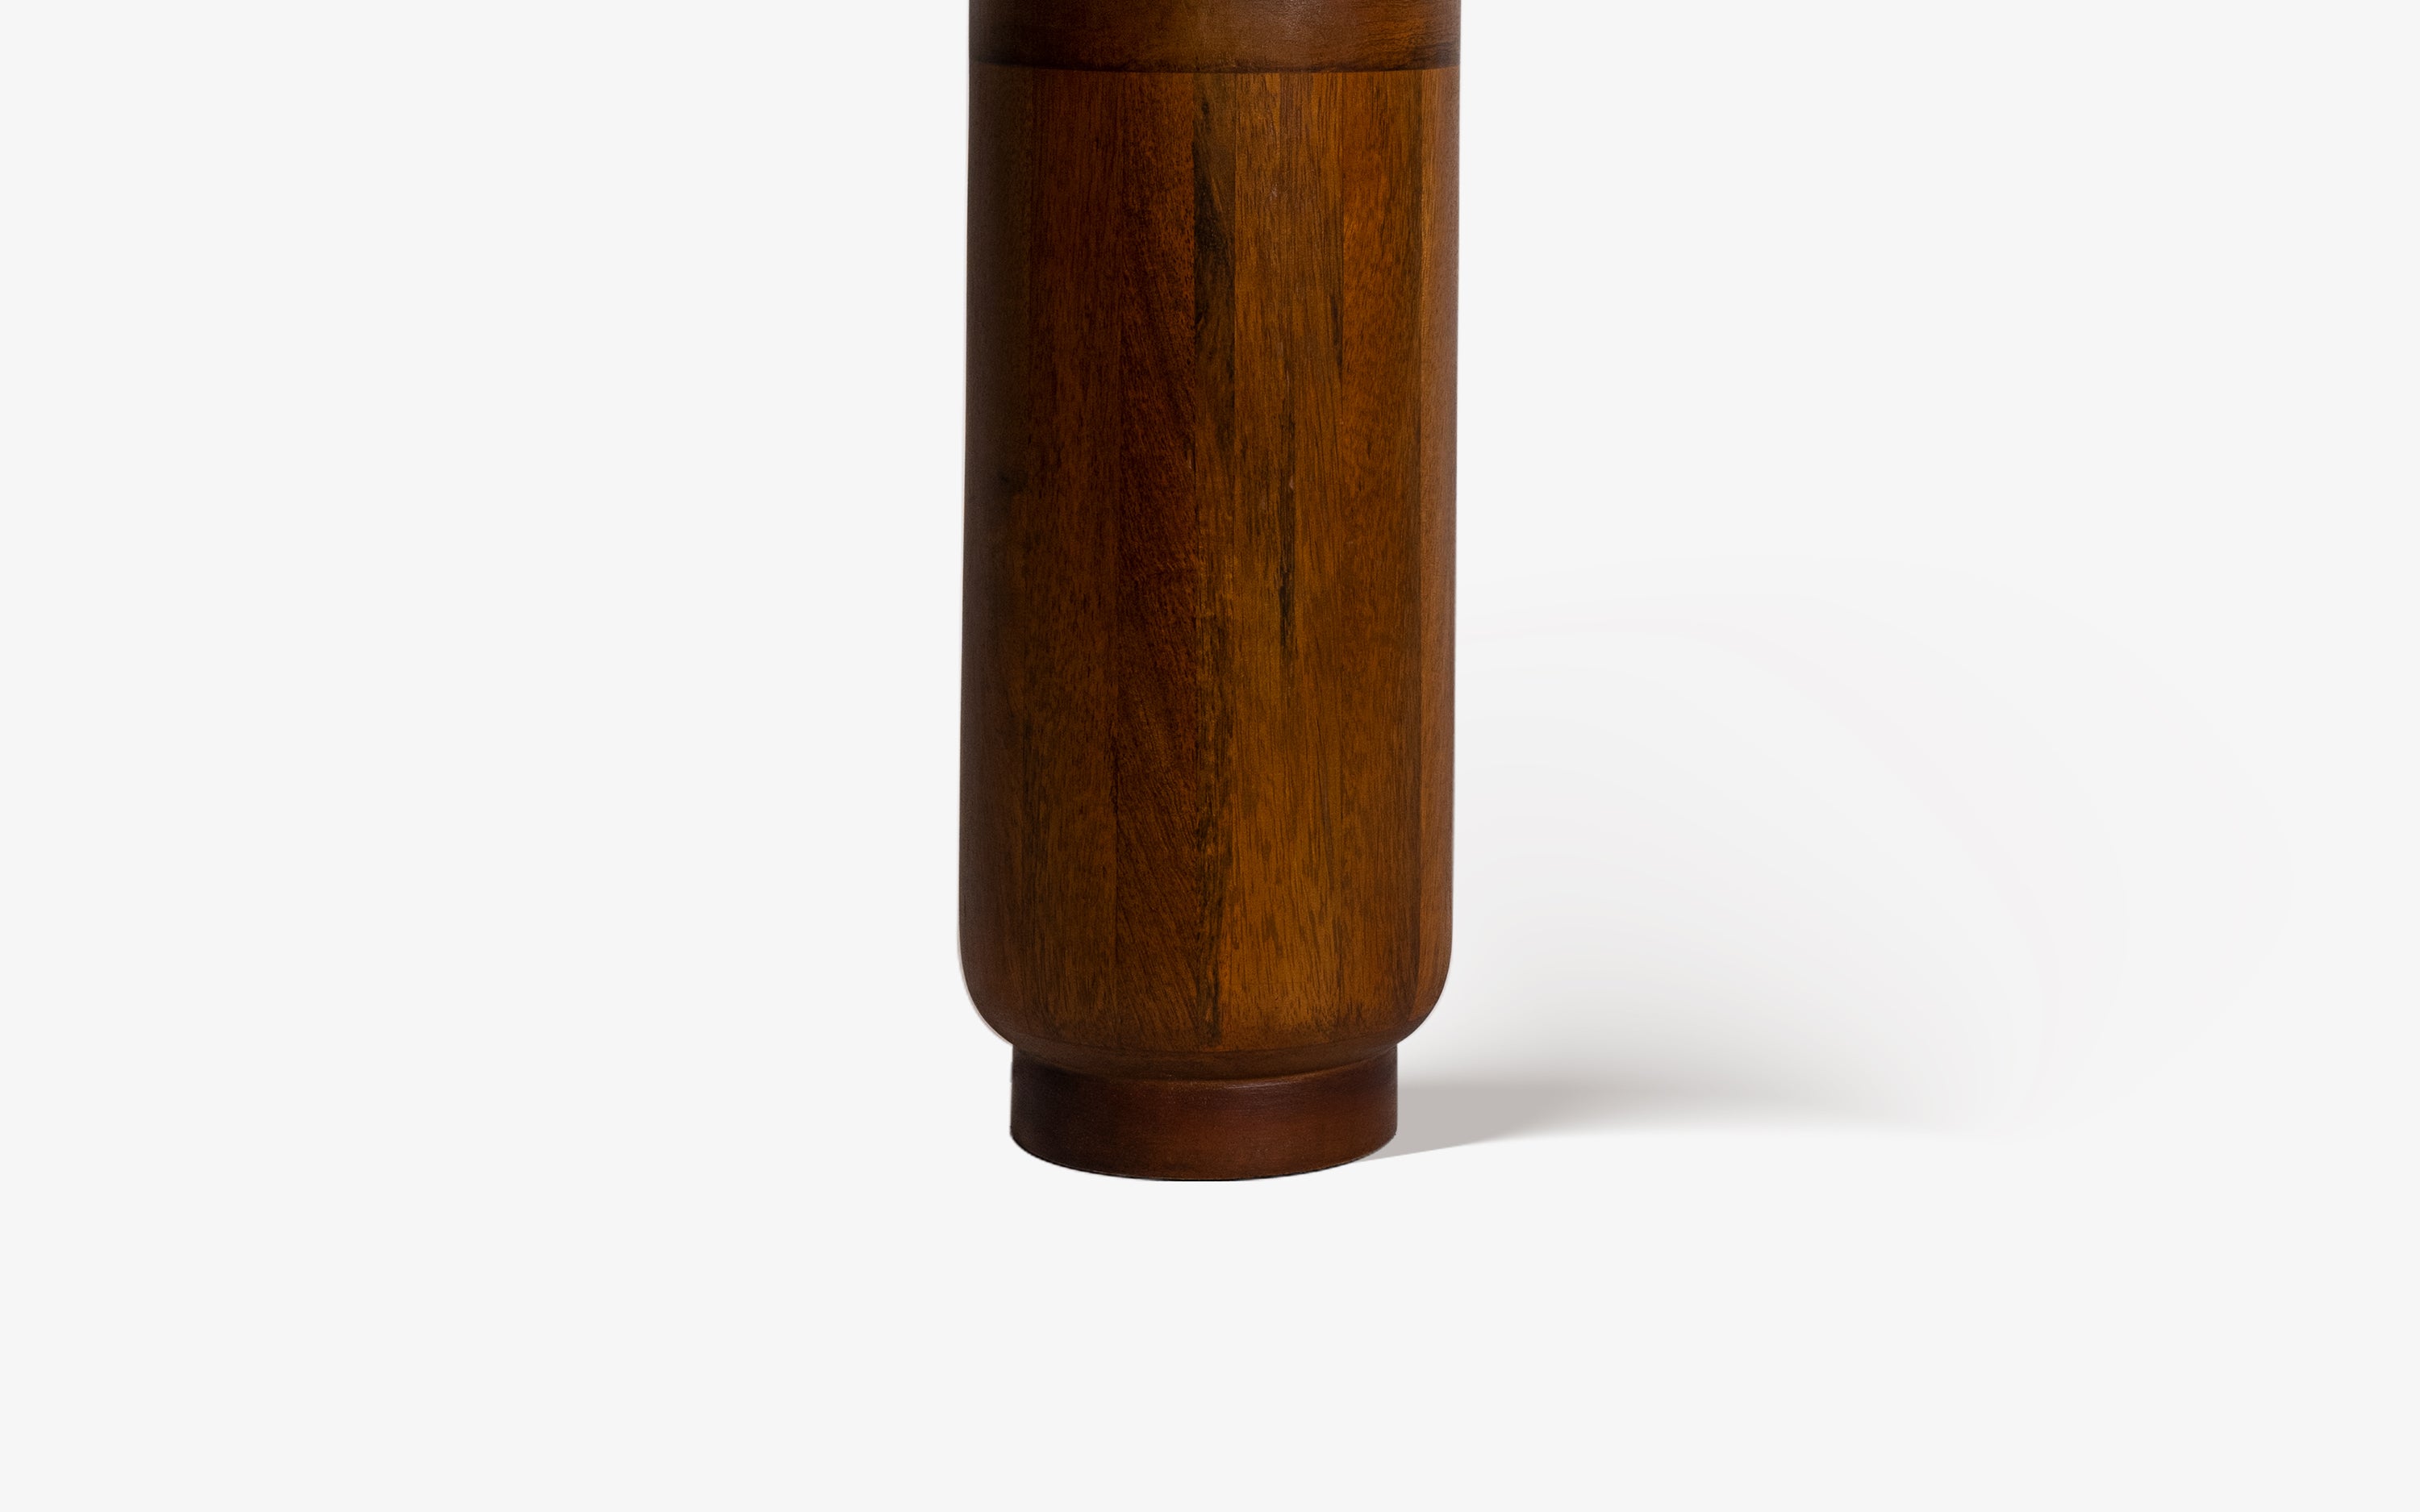 Gesu Table Lamp with applique shade